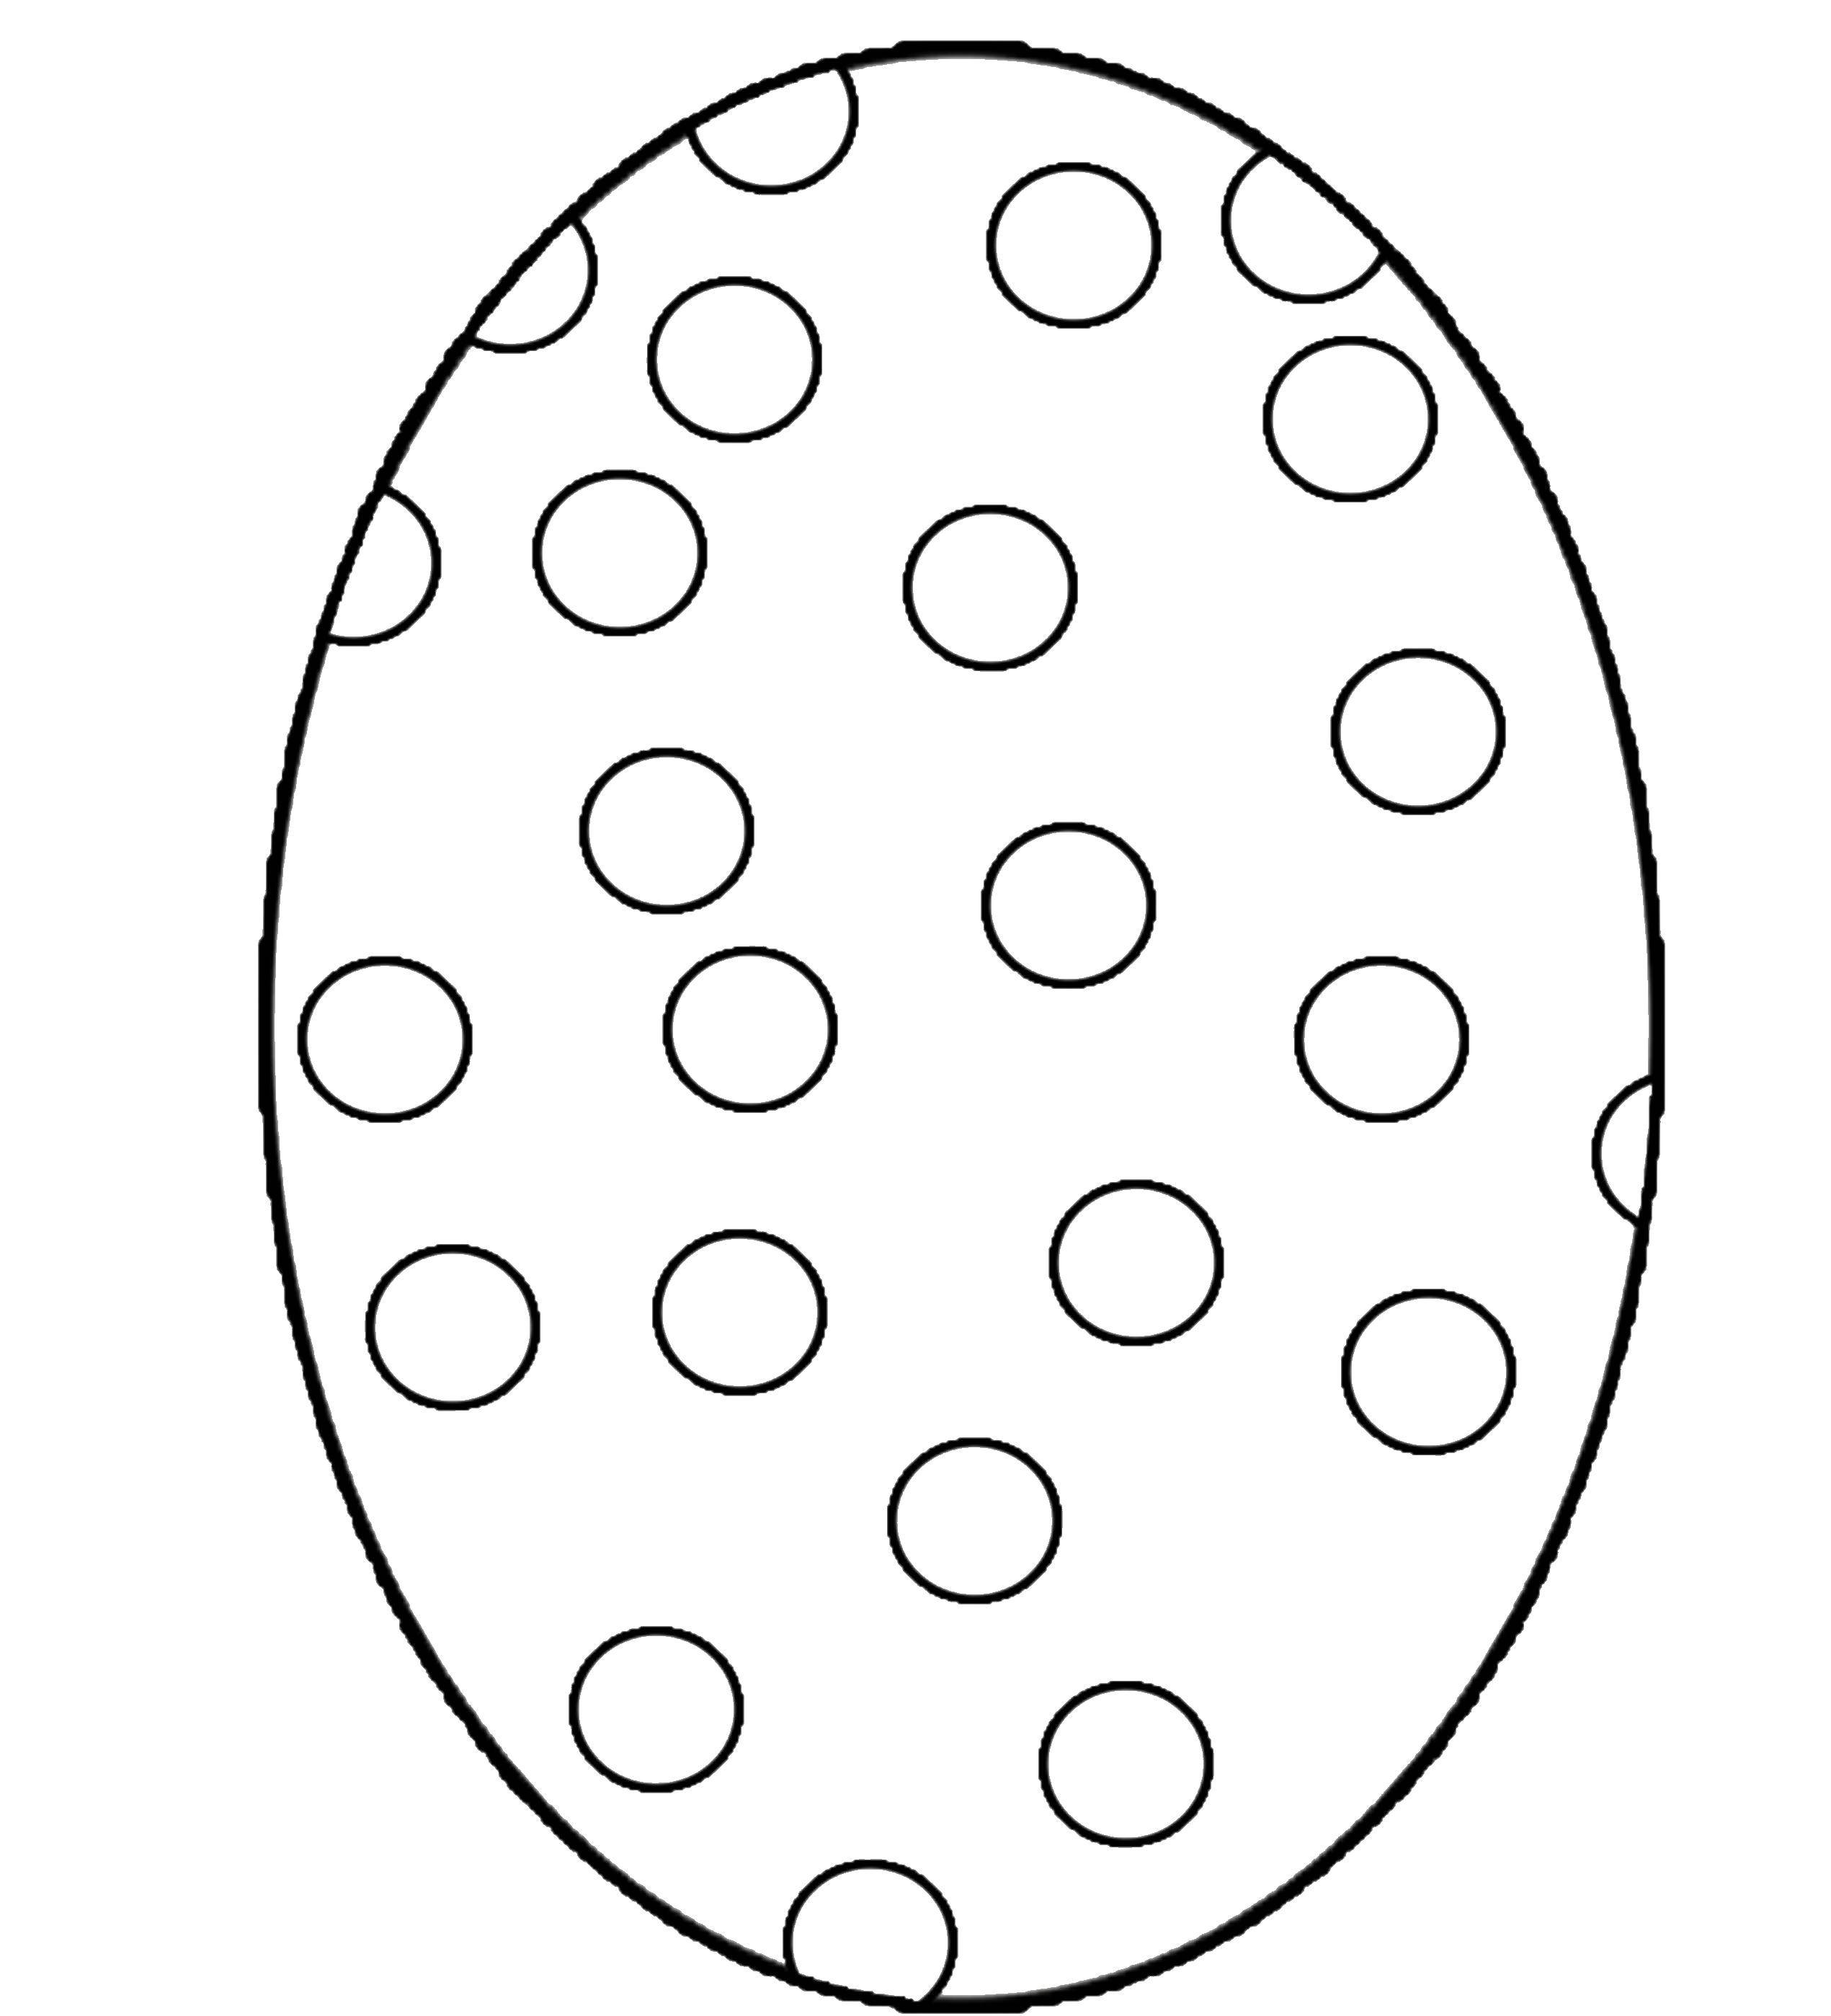 Название: Раскраска Яйцо с кружочками. Категория: Узоры для раскрашивания яиц. Теги: узоры, кружочки.